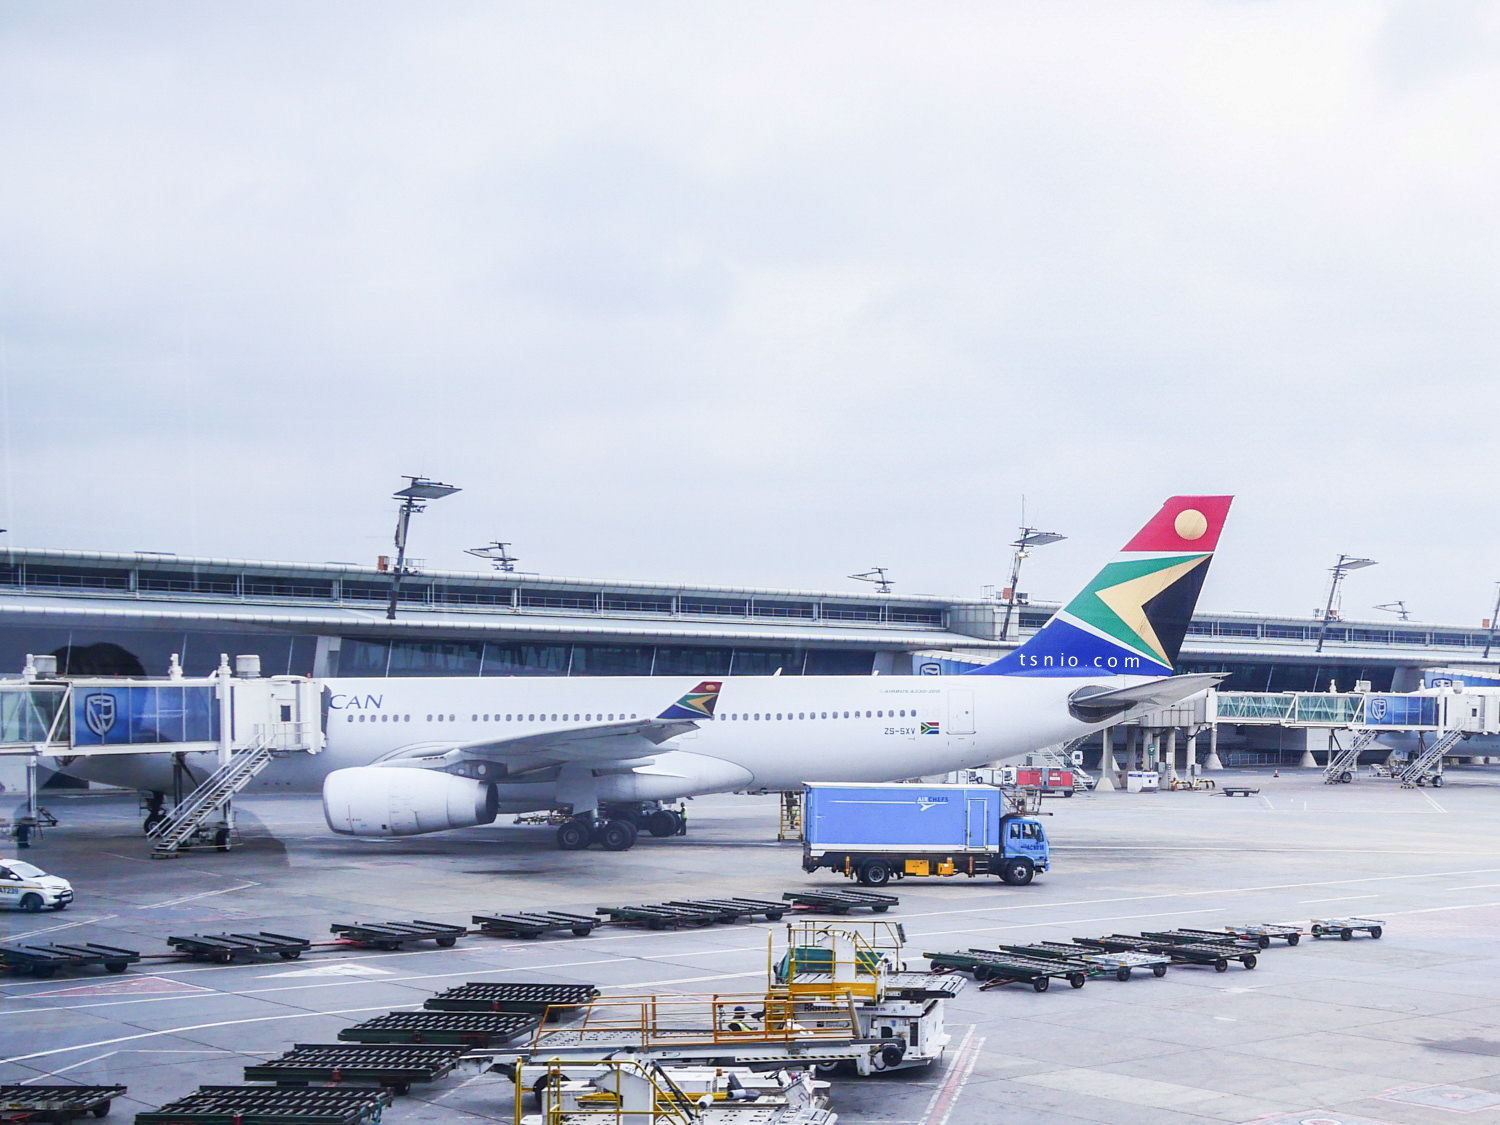 南非航空經濟艙 南非轉機辛巴威航線 搭乘經驗分享